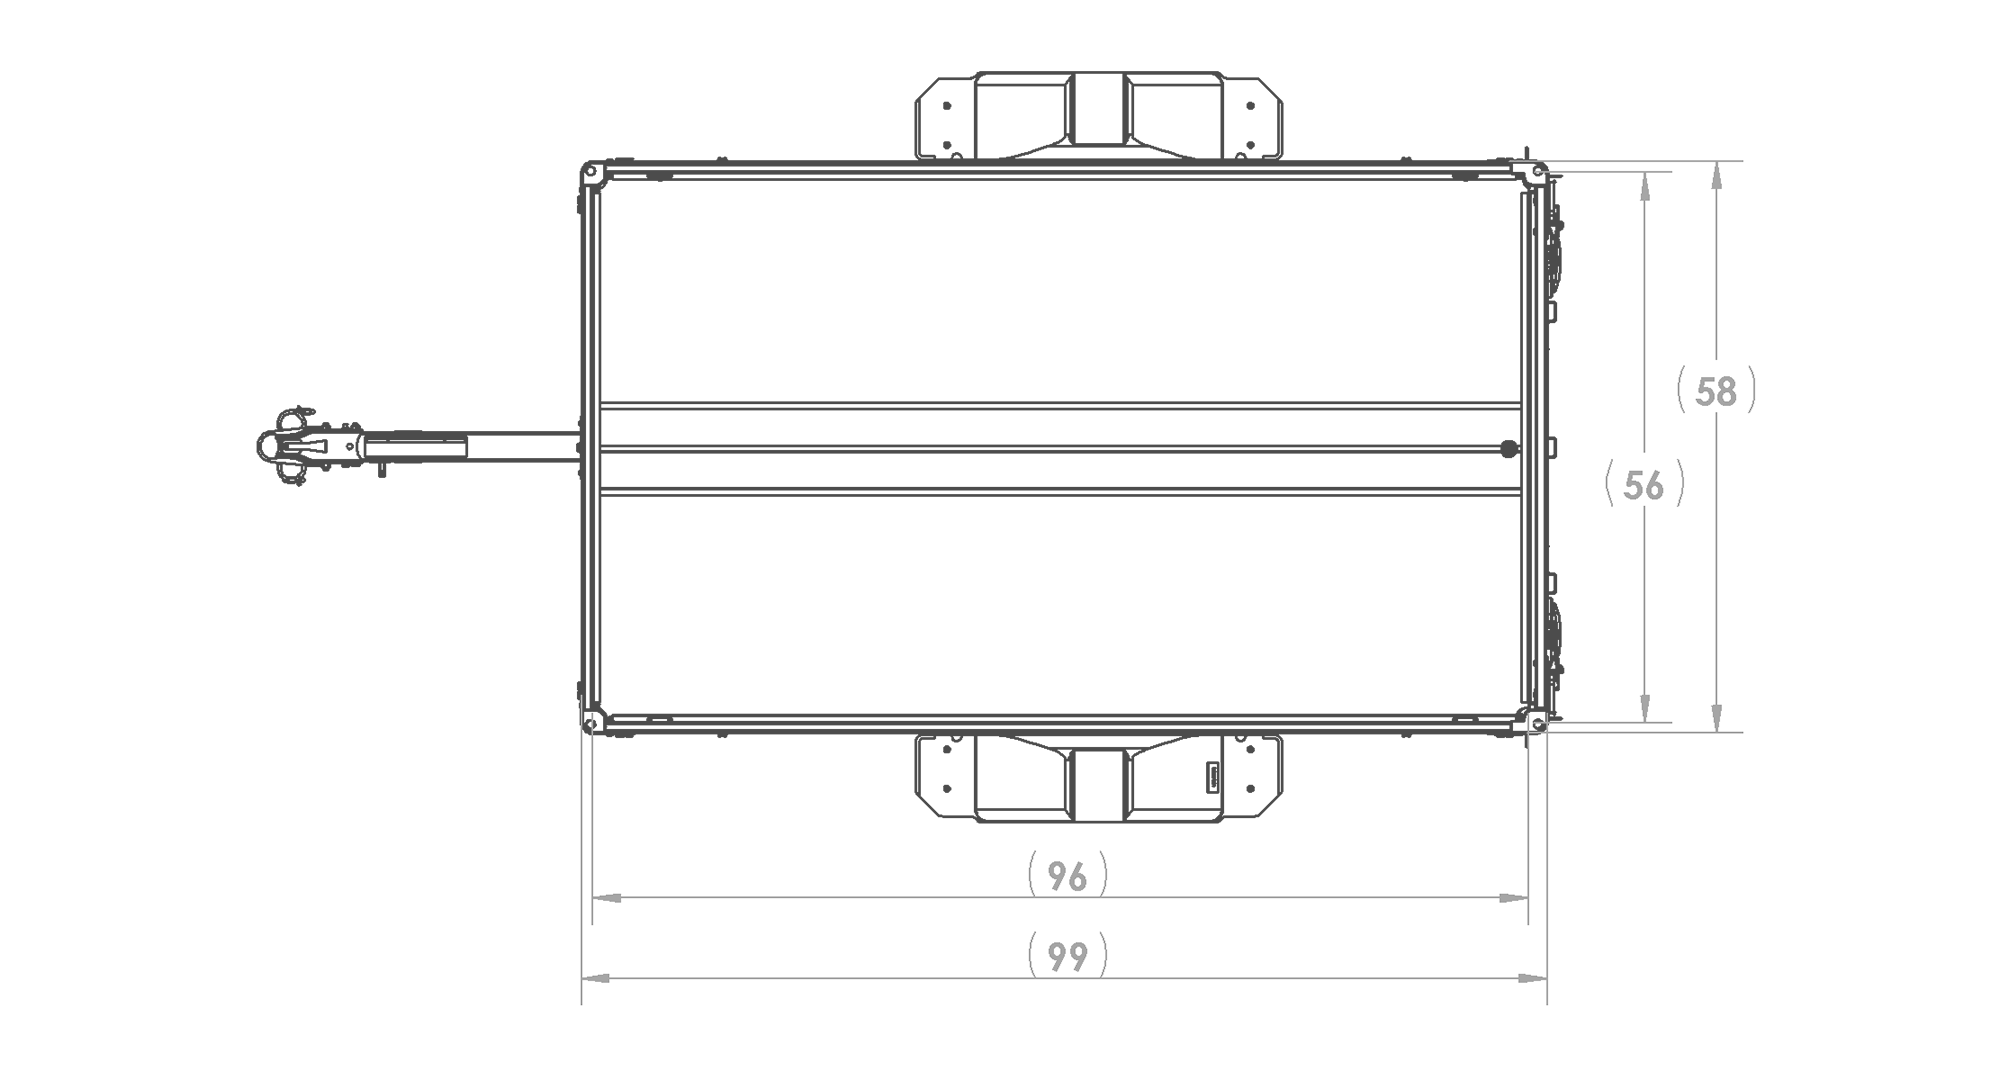 Karavan Trailer's 4.5x8Ft. Anodized Aluminum Utility Trailer, Top View Measurements